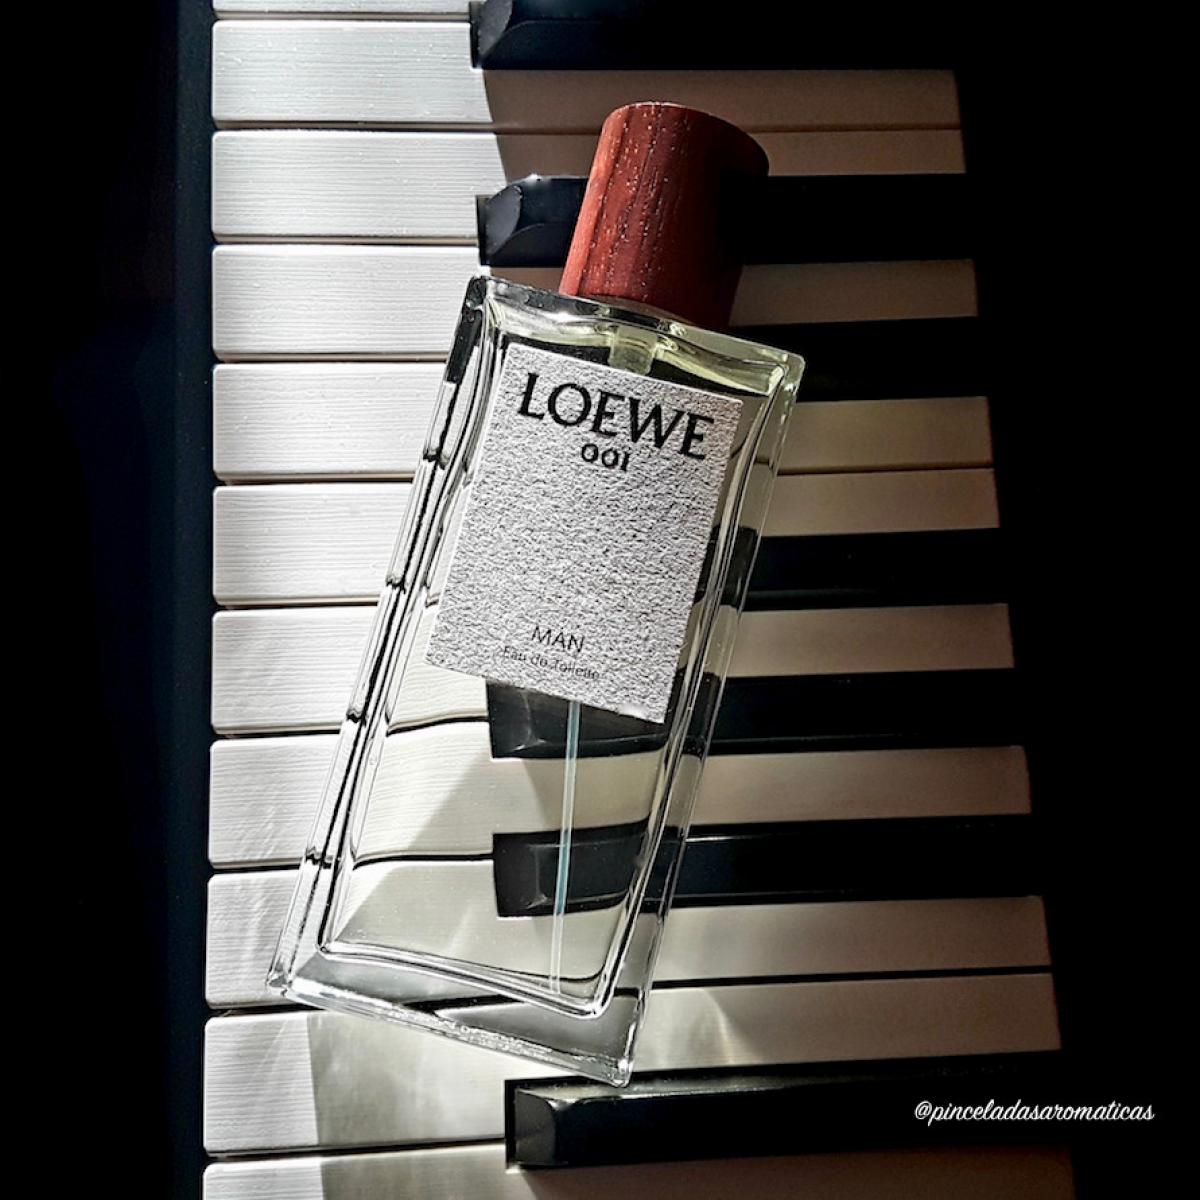 Loewe 001 Man EDT Loewe Colonia - una fragancia para Hombres 2017